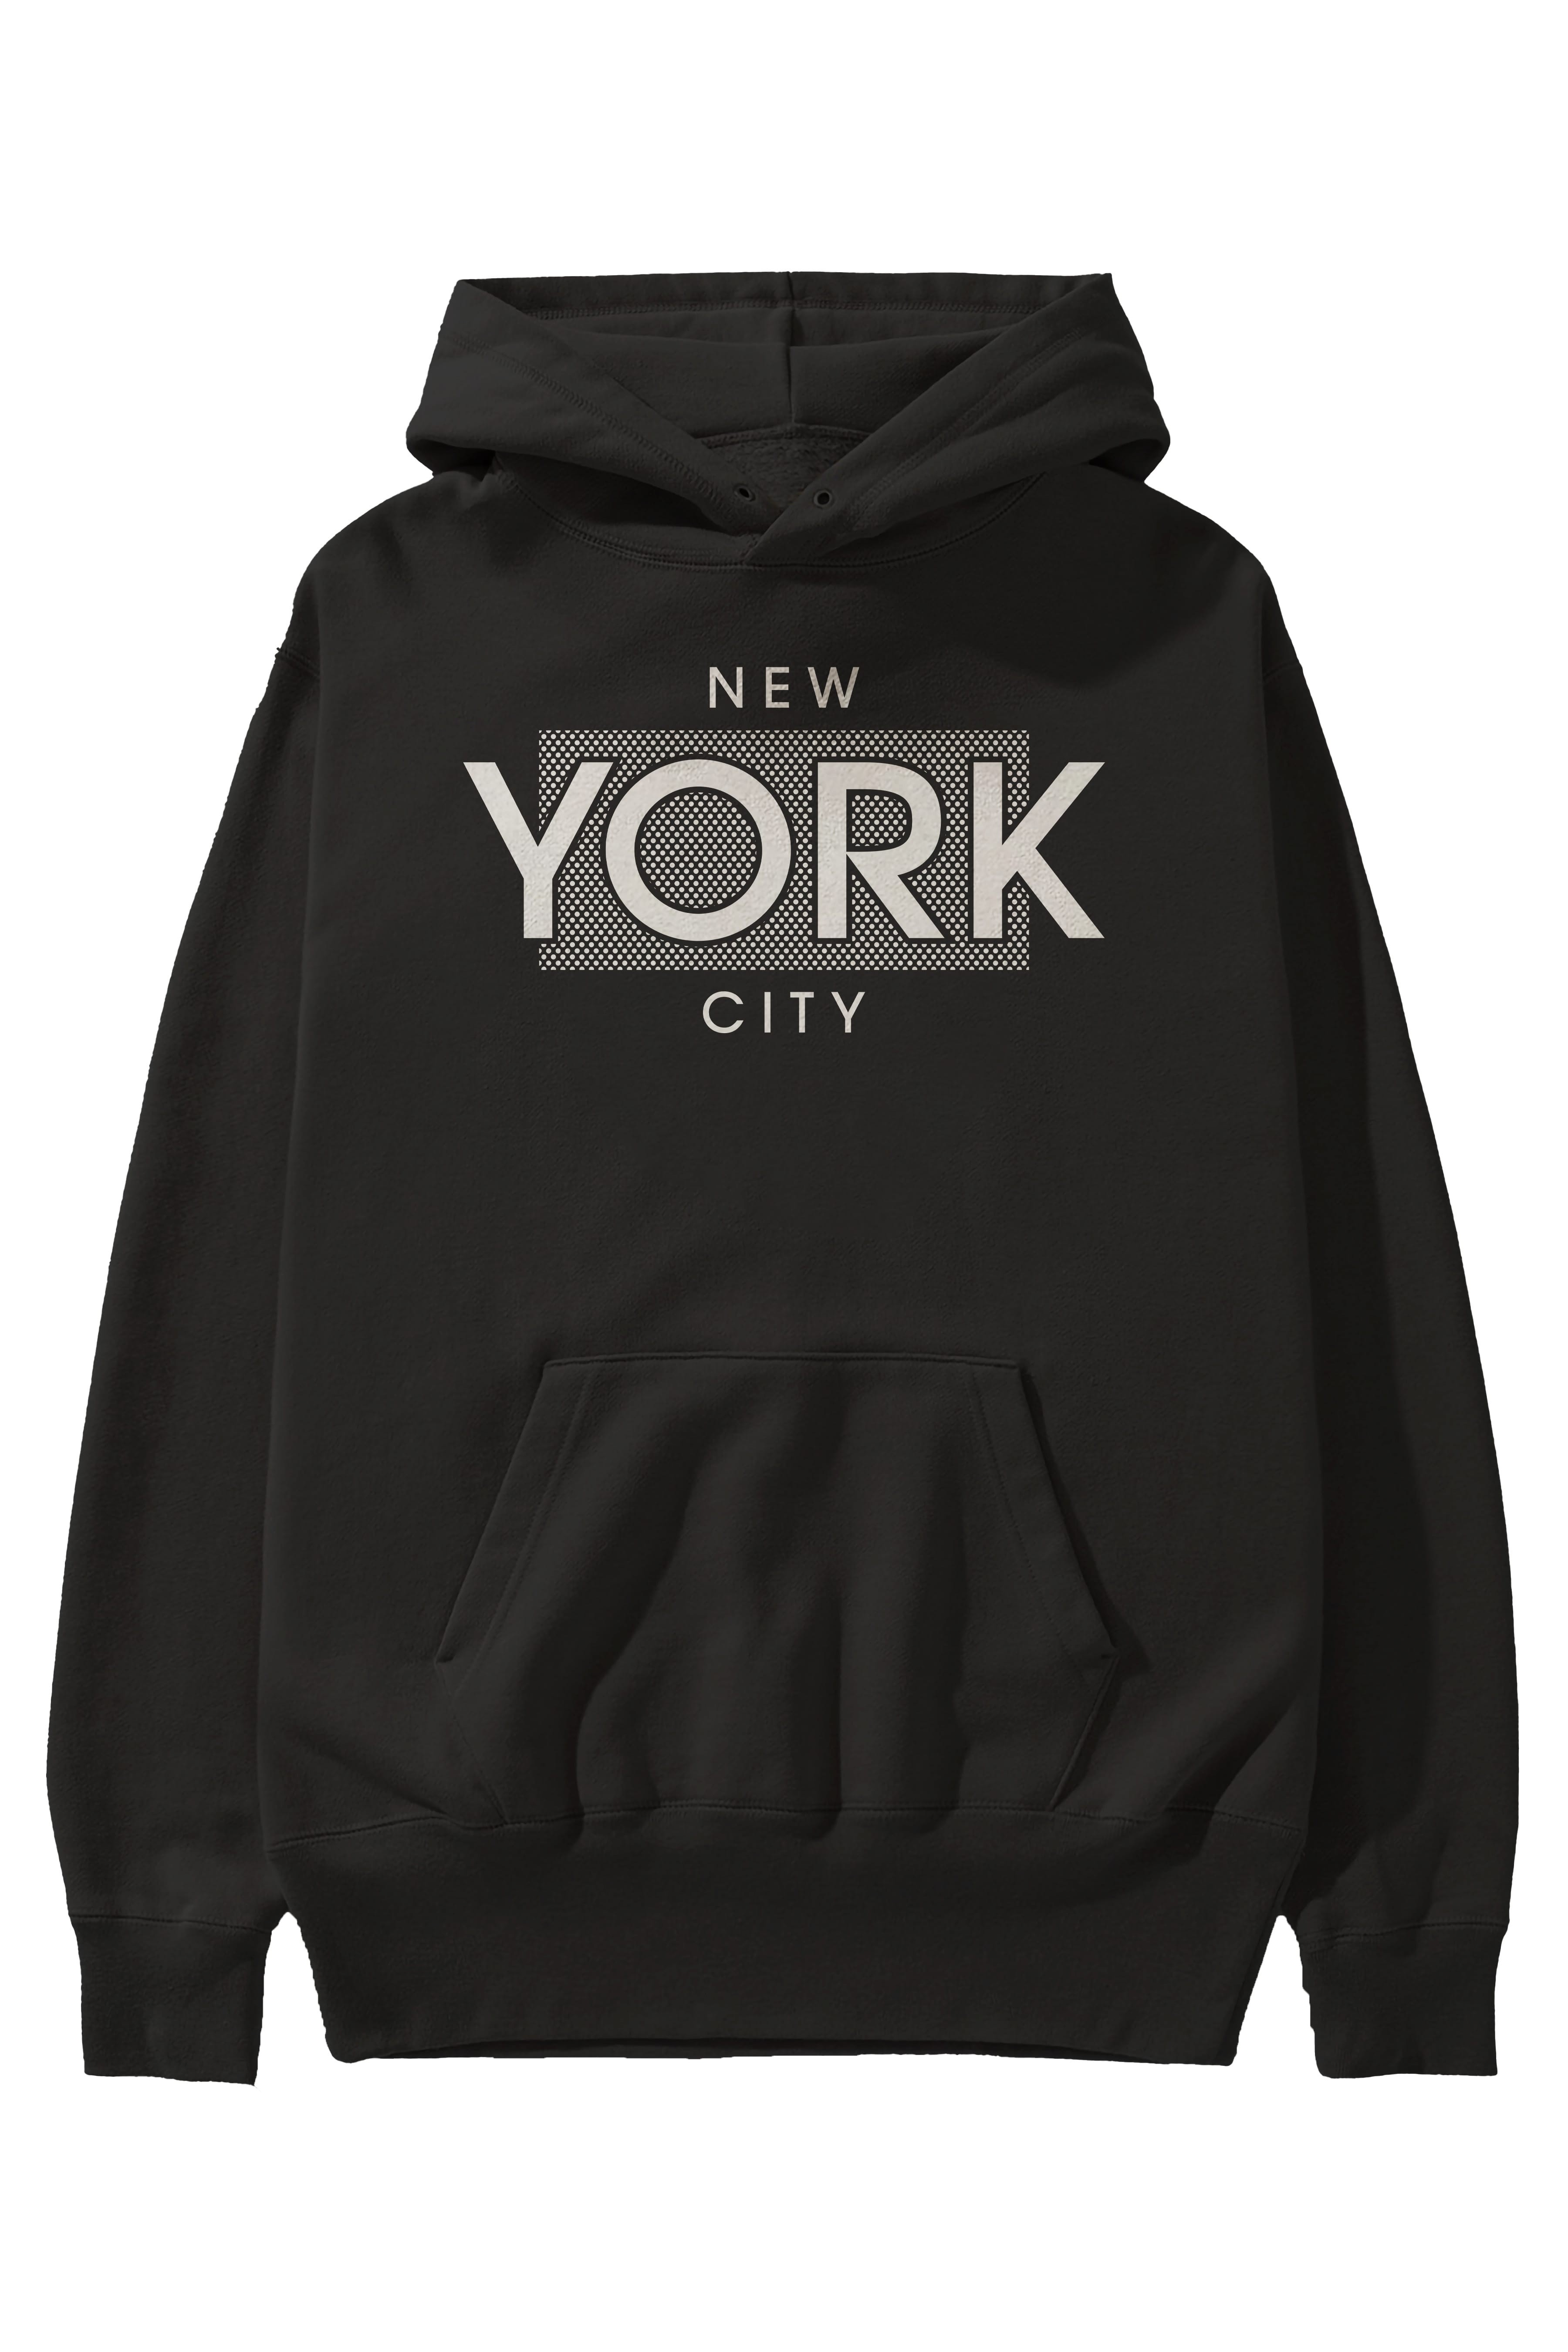 New York City Ön Baskılı Oversize Hoodie Kapüşonlu Sweatshirt Erkek Kadın Unisex